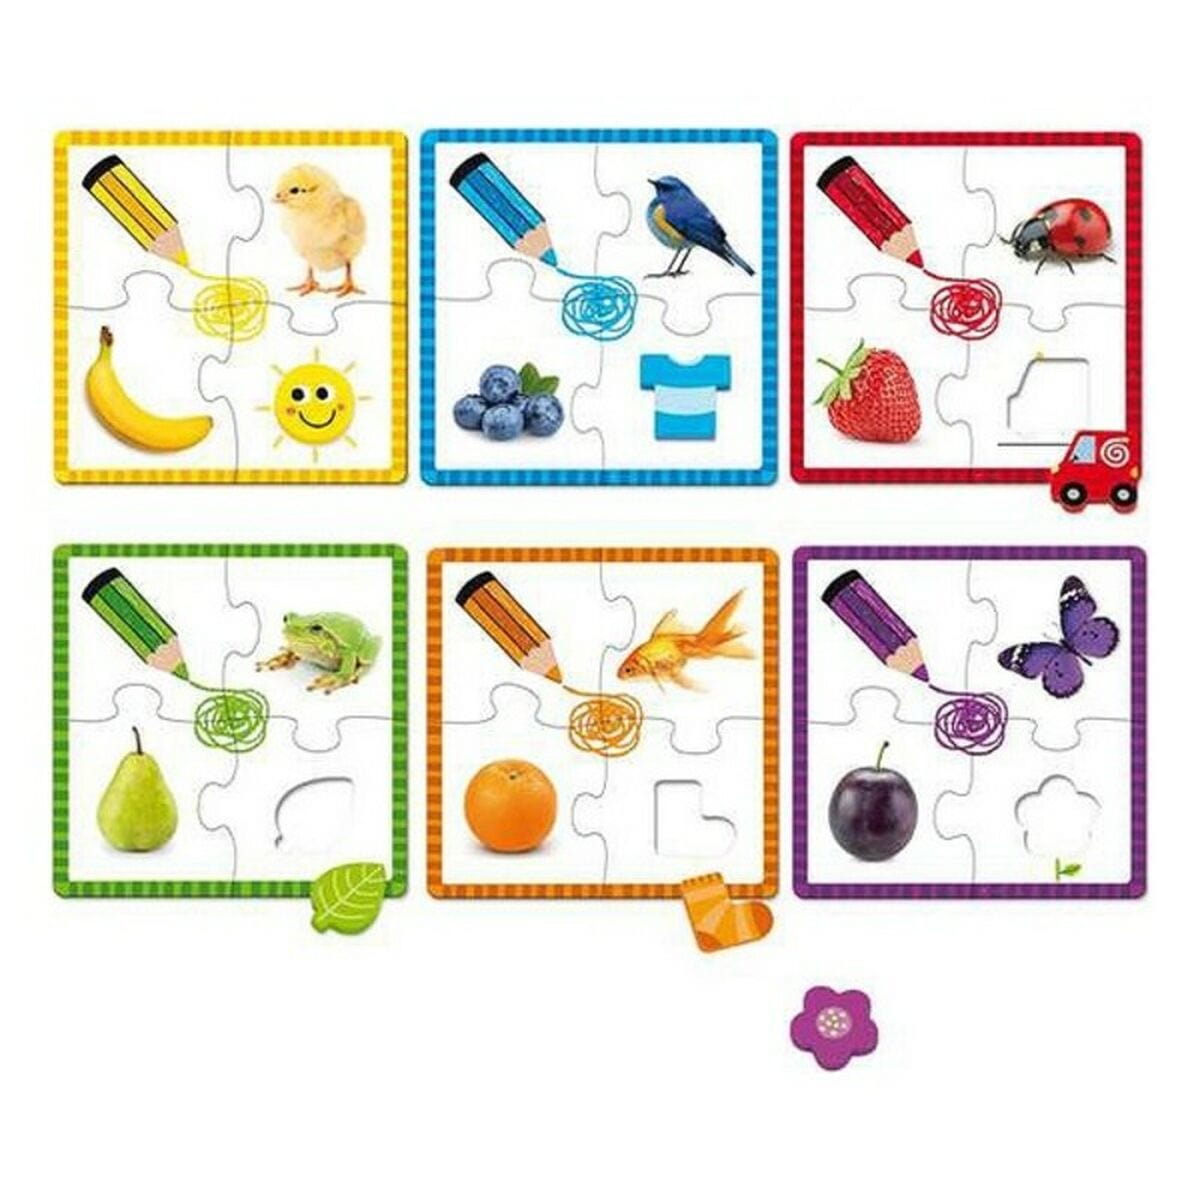 Goula Spielzeug | Kostüme > Spielzeug und Spiele > Puzzle und Bauklötzchen Puzzle Goula 53475